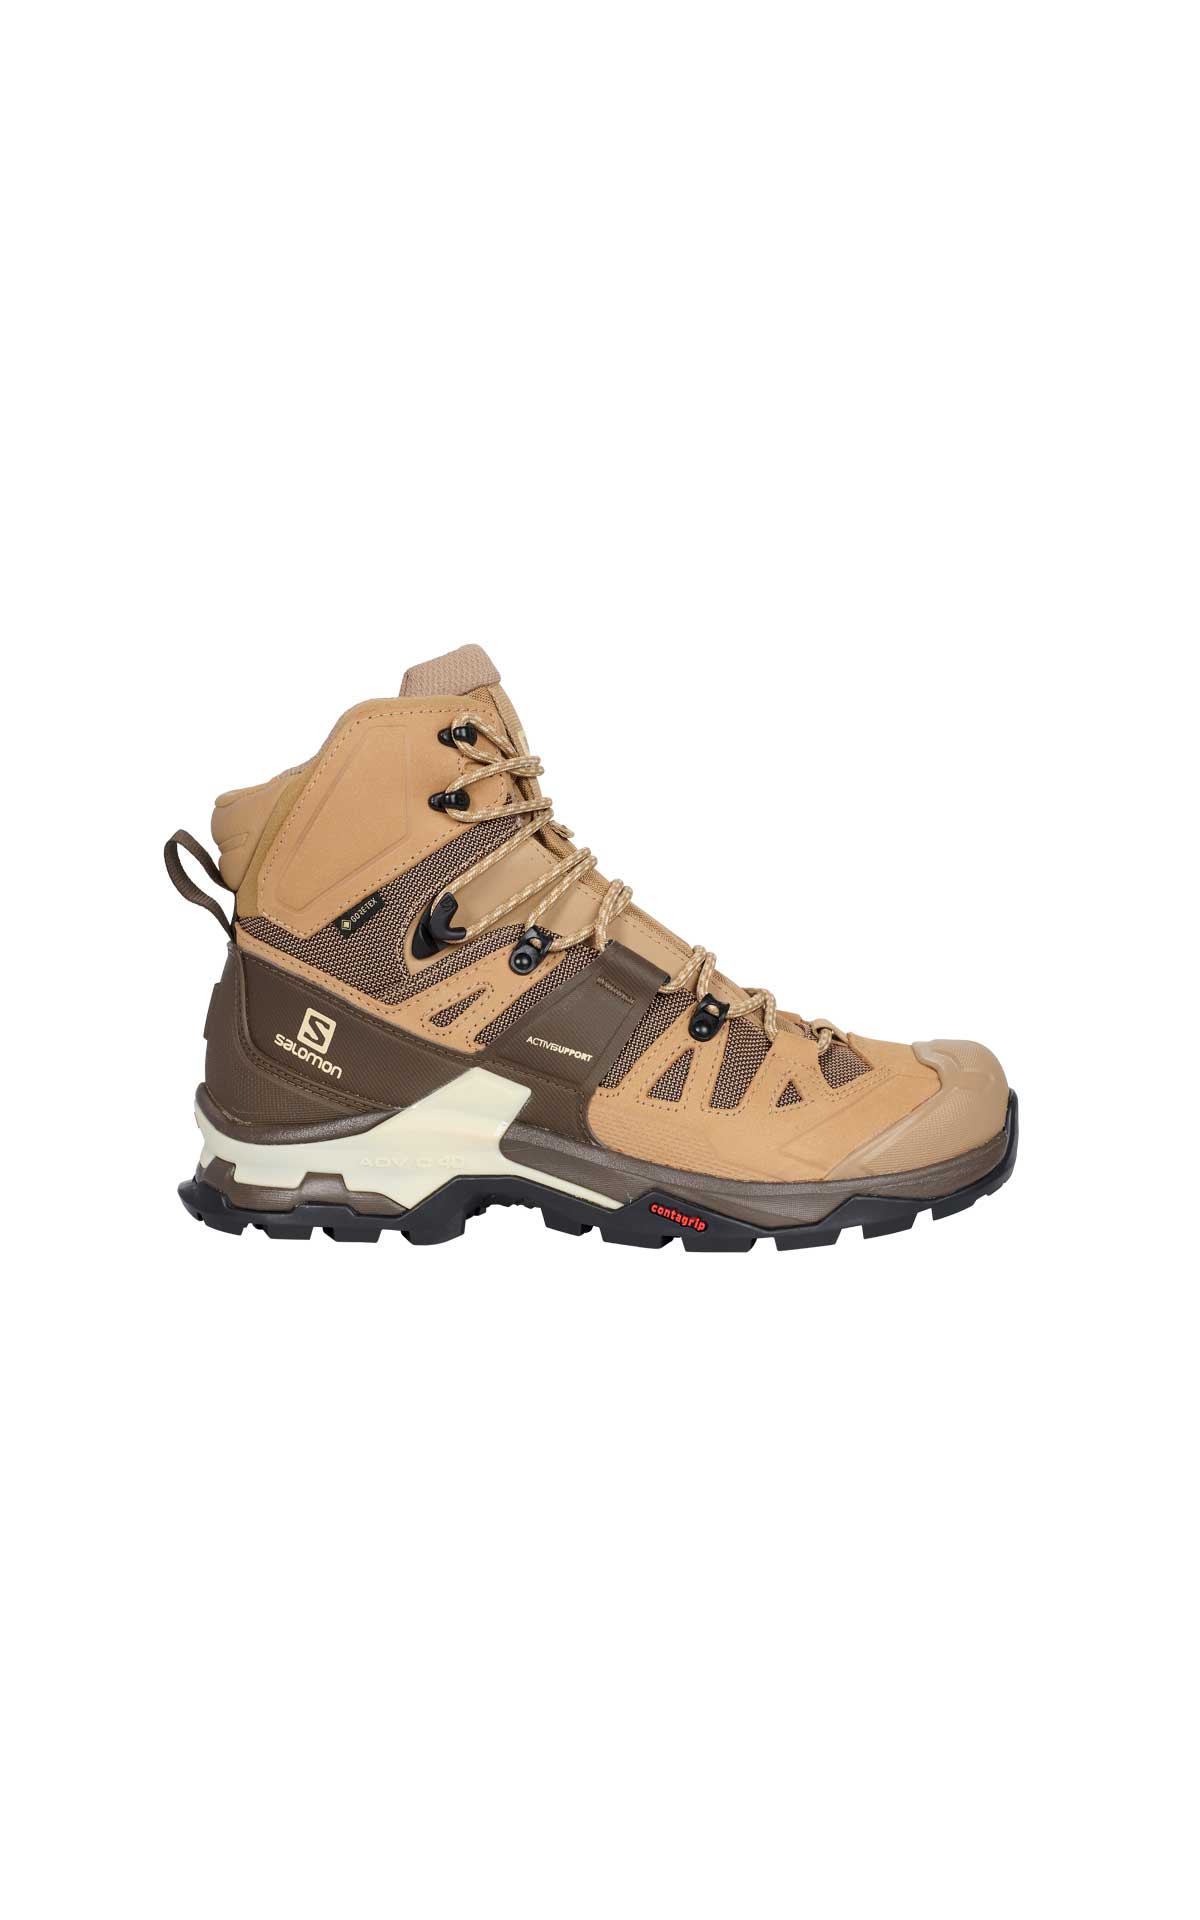 Mountain boots salomon